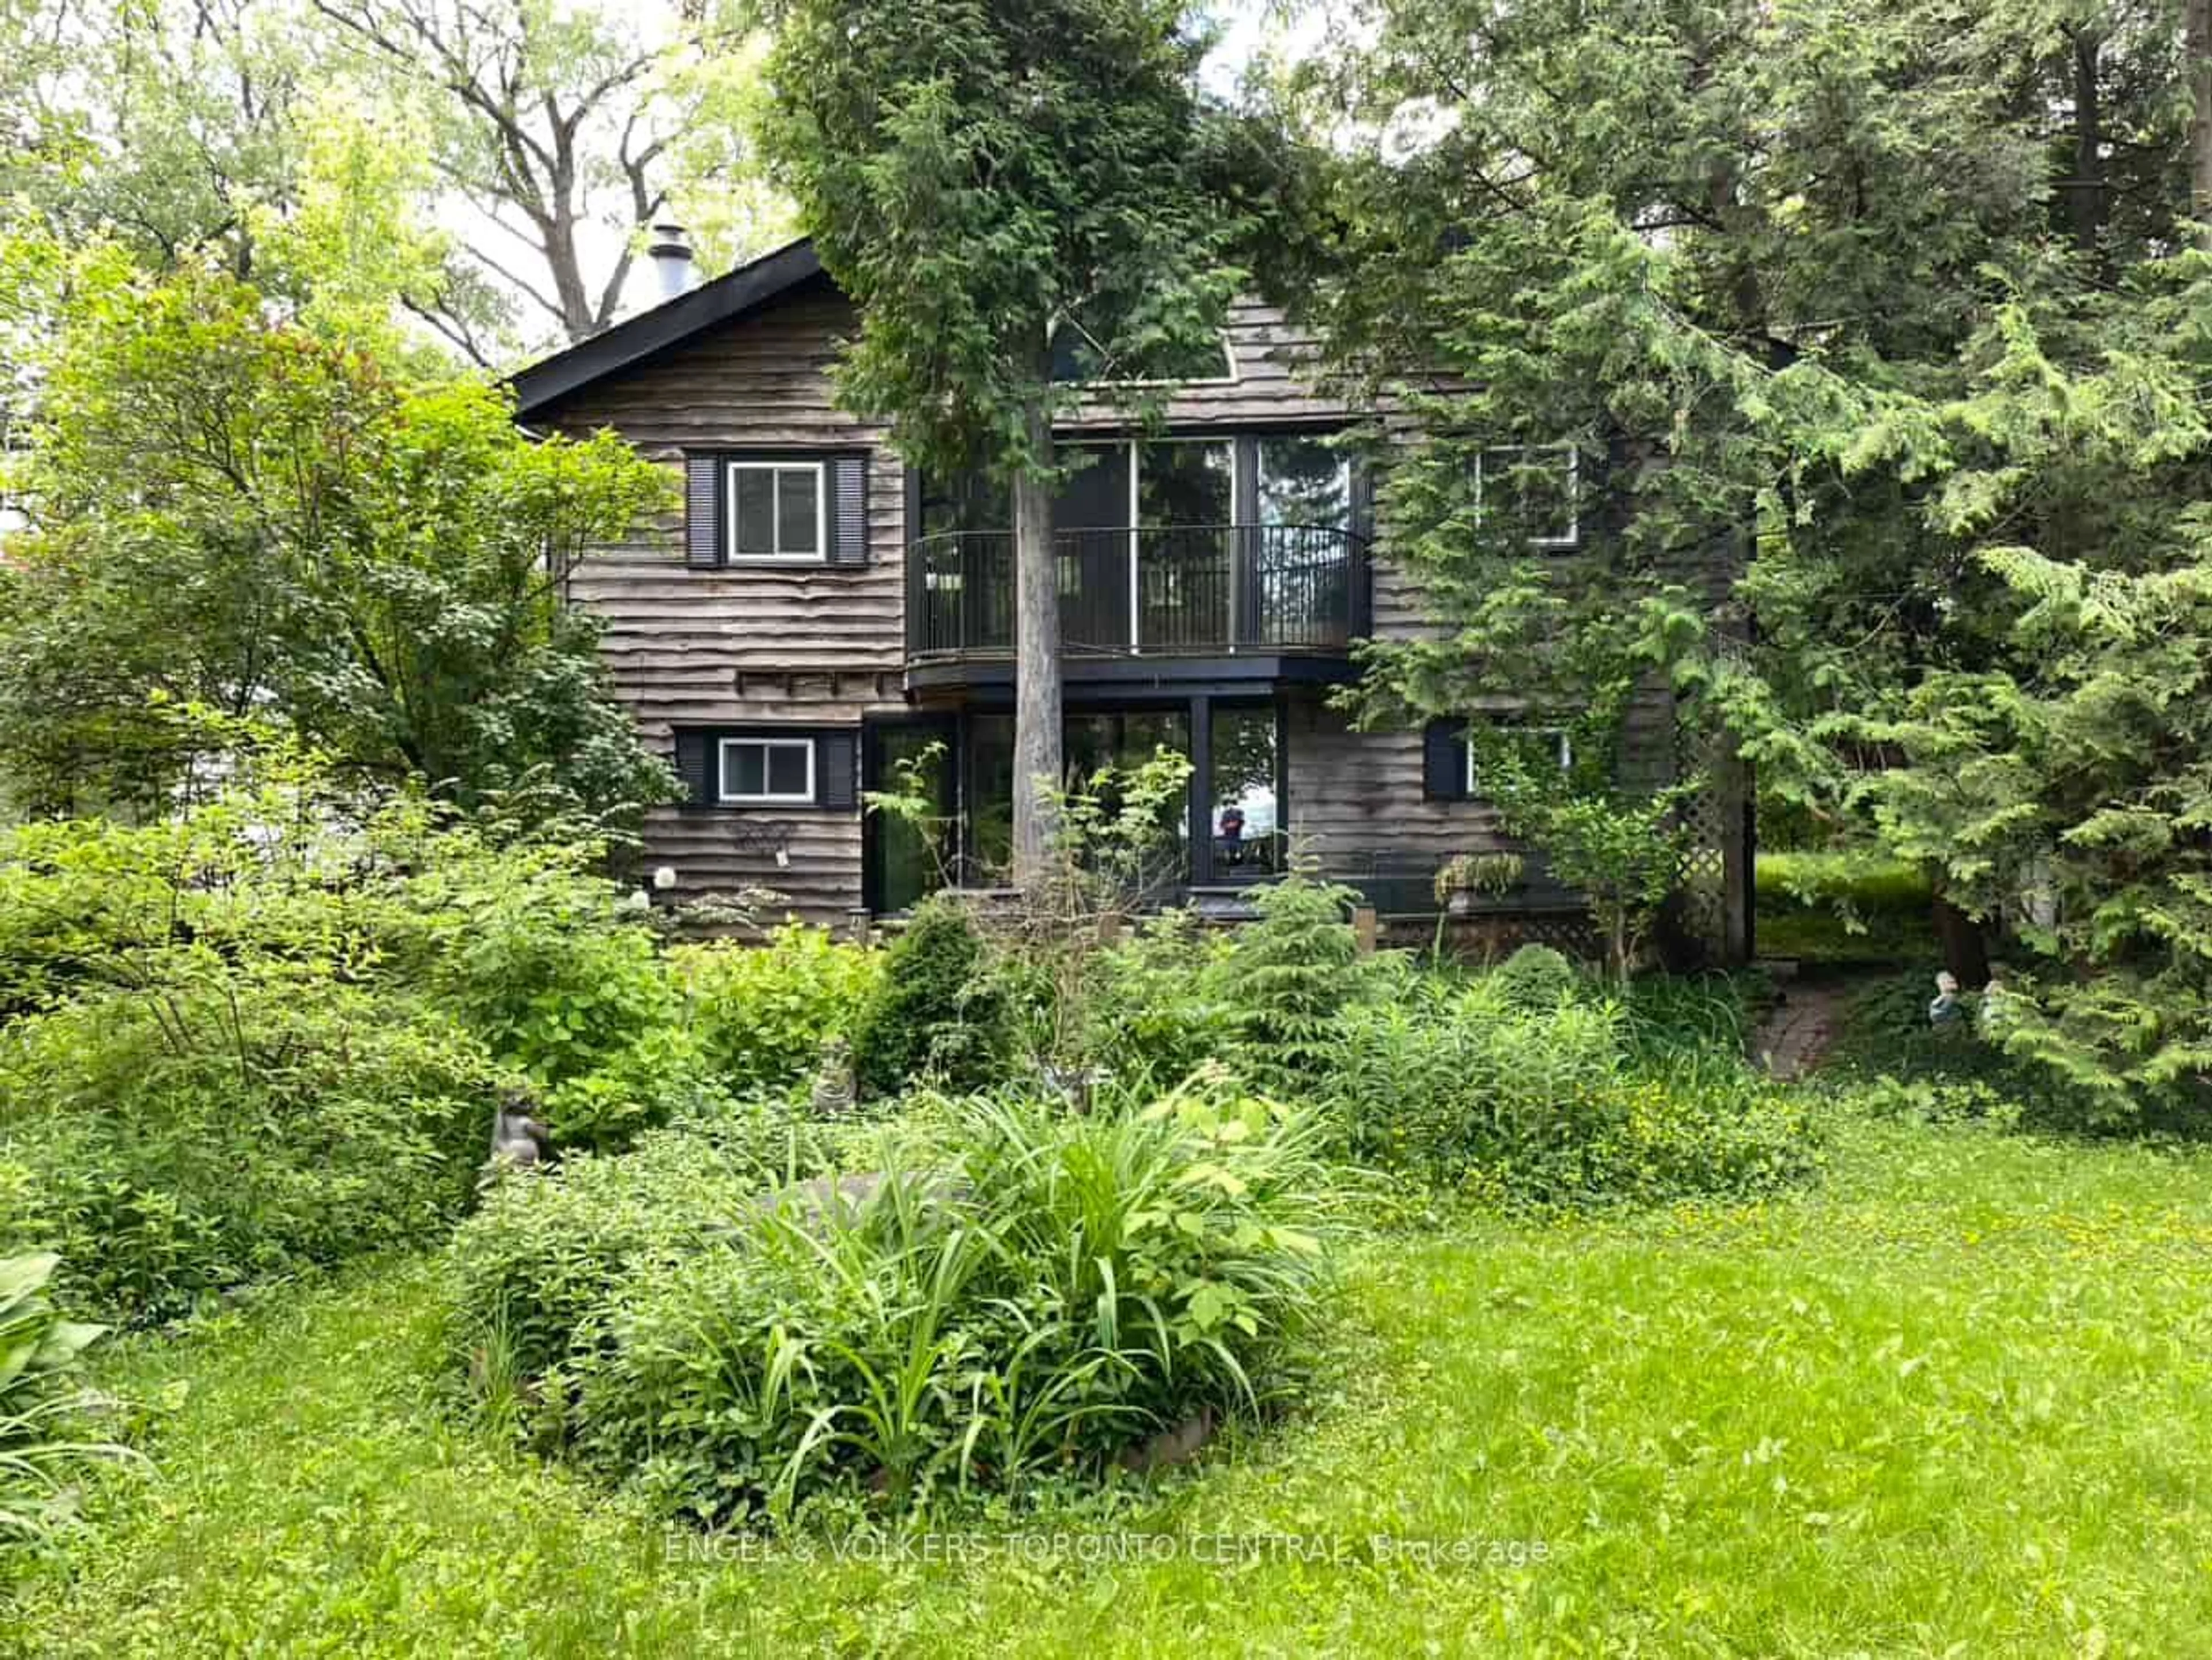 Cottage for 44 Oliver Cres, Collingwood Ontario L9Y 3Z1